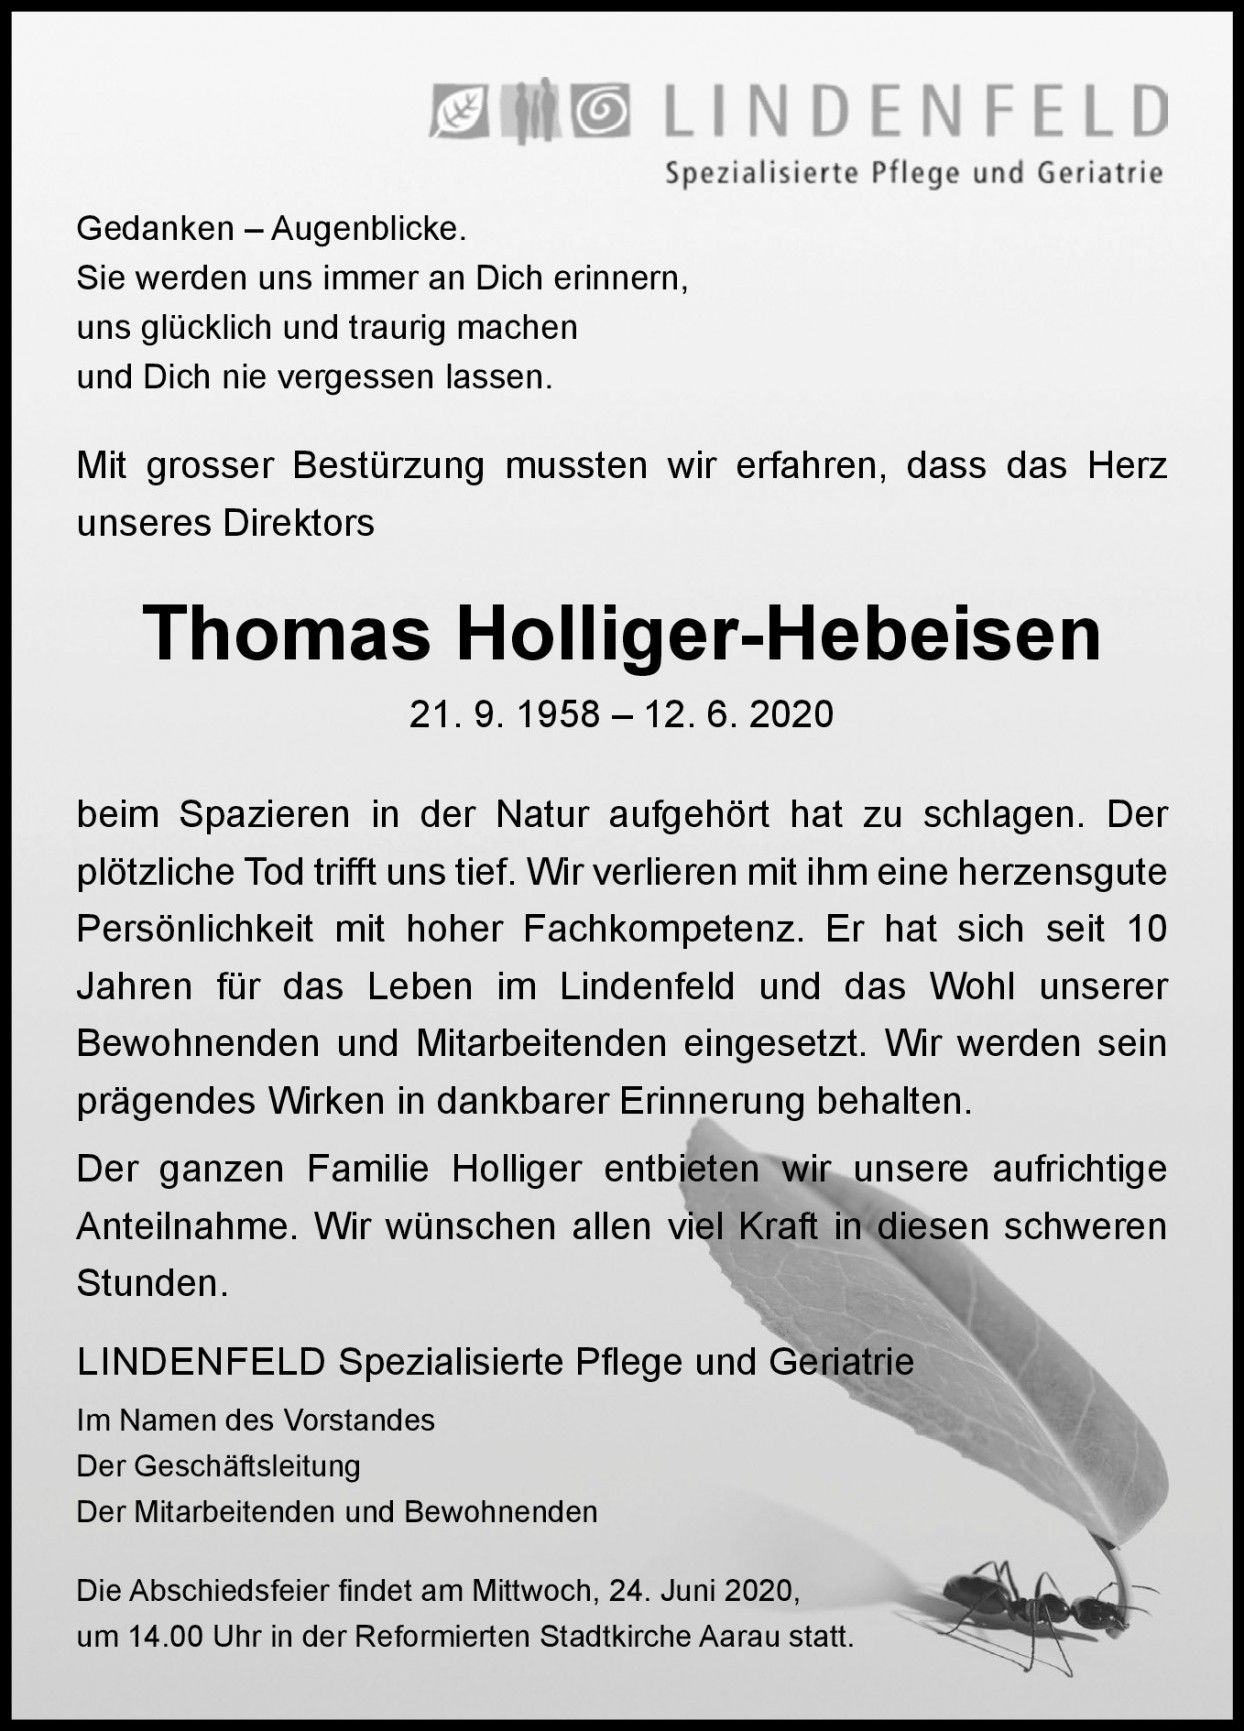 Thomas Holliger-Hebeisen